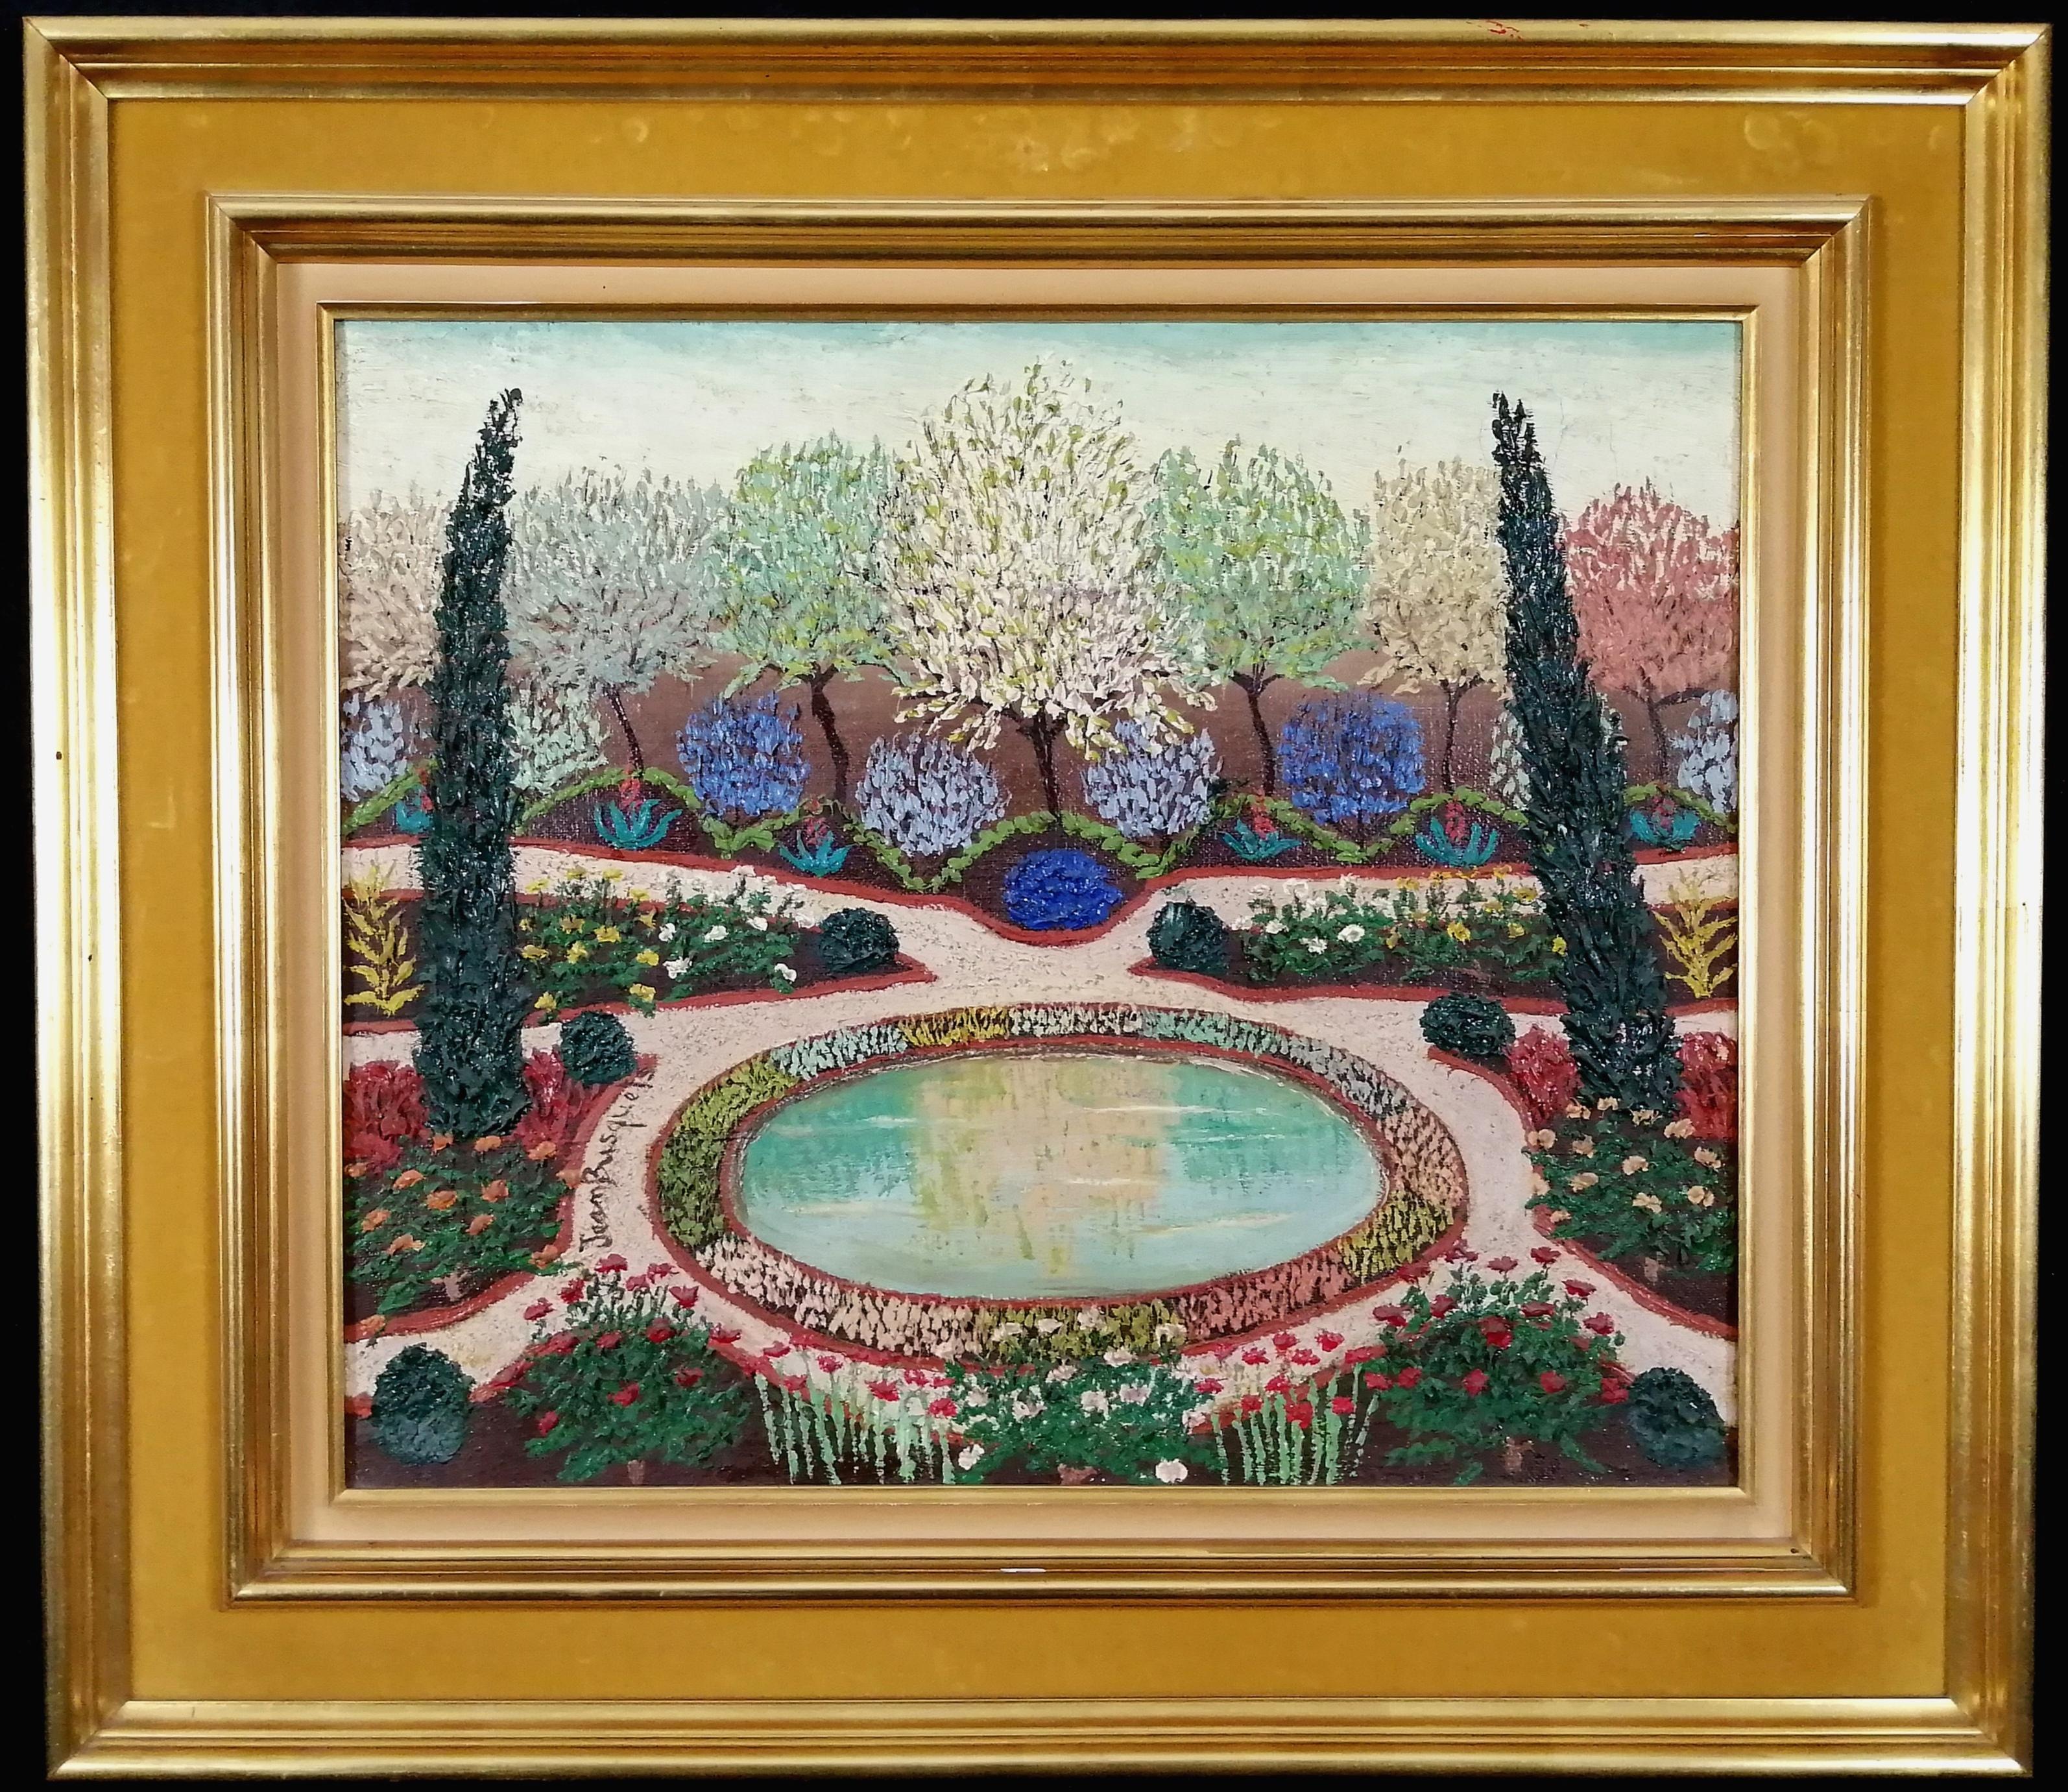 Jean Busquets Landscape Painting - Jardin Parc de Saint-Cloud - Large French Paris Naïf Garden Park Oil Painting